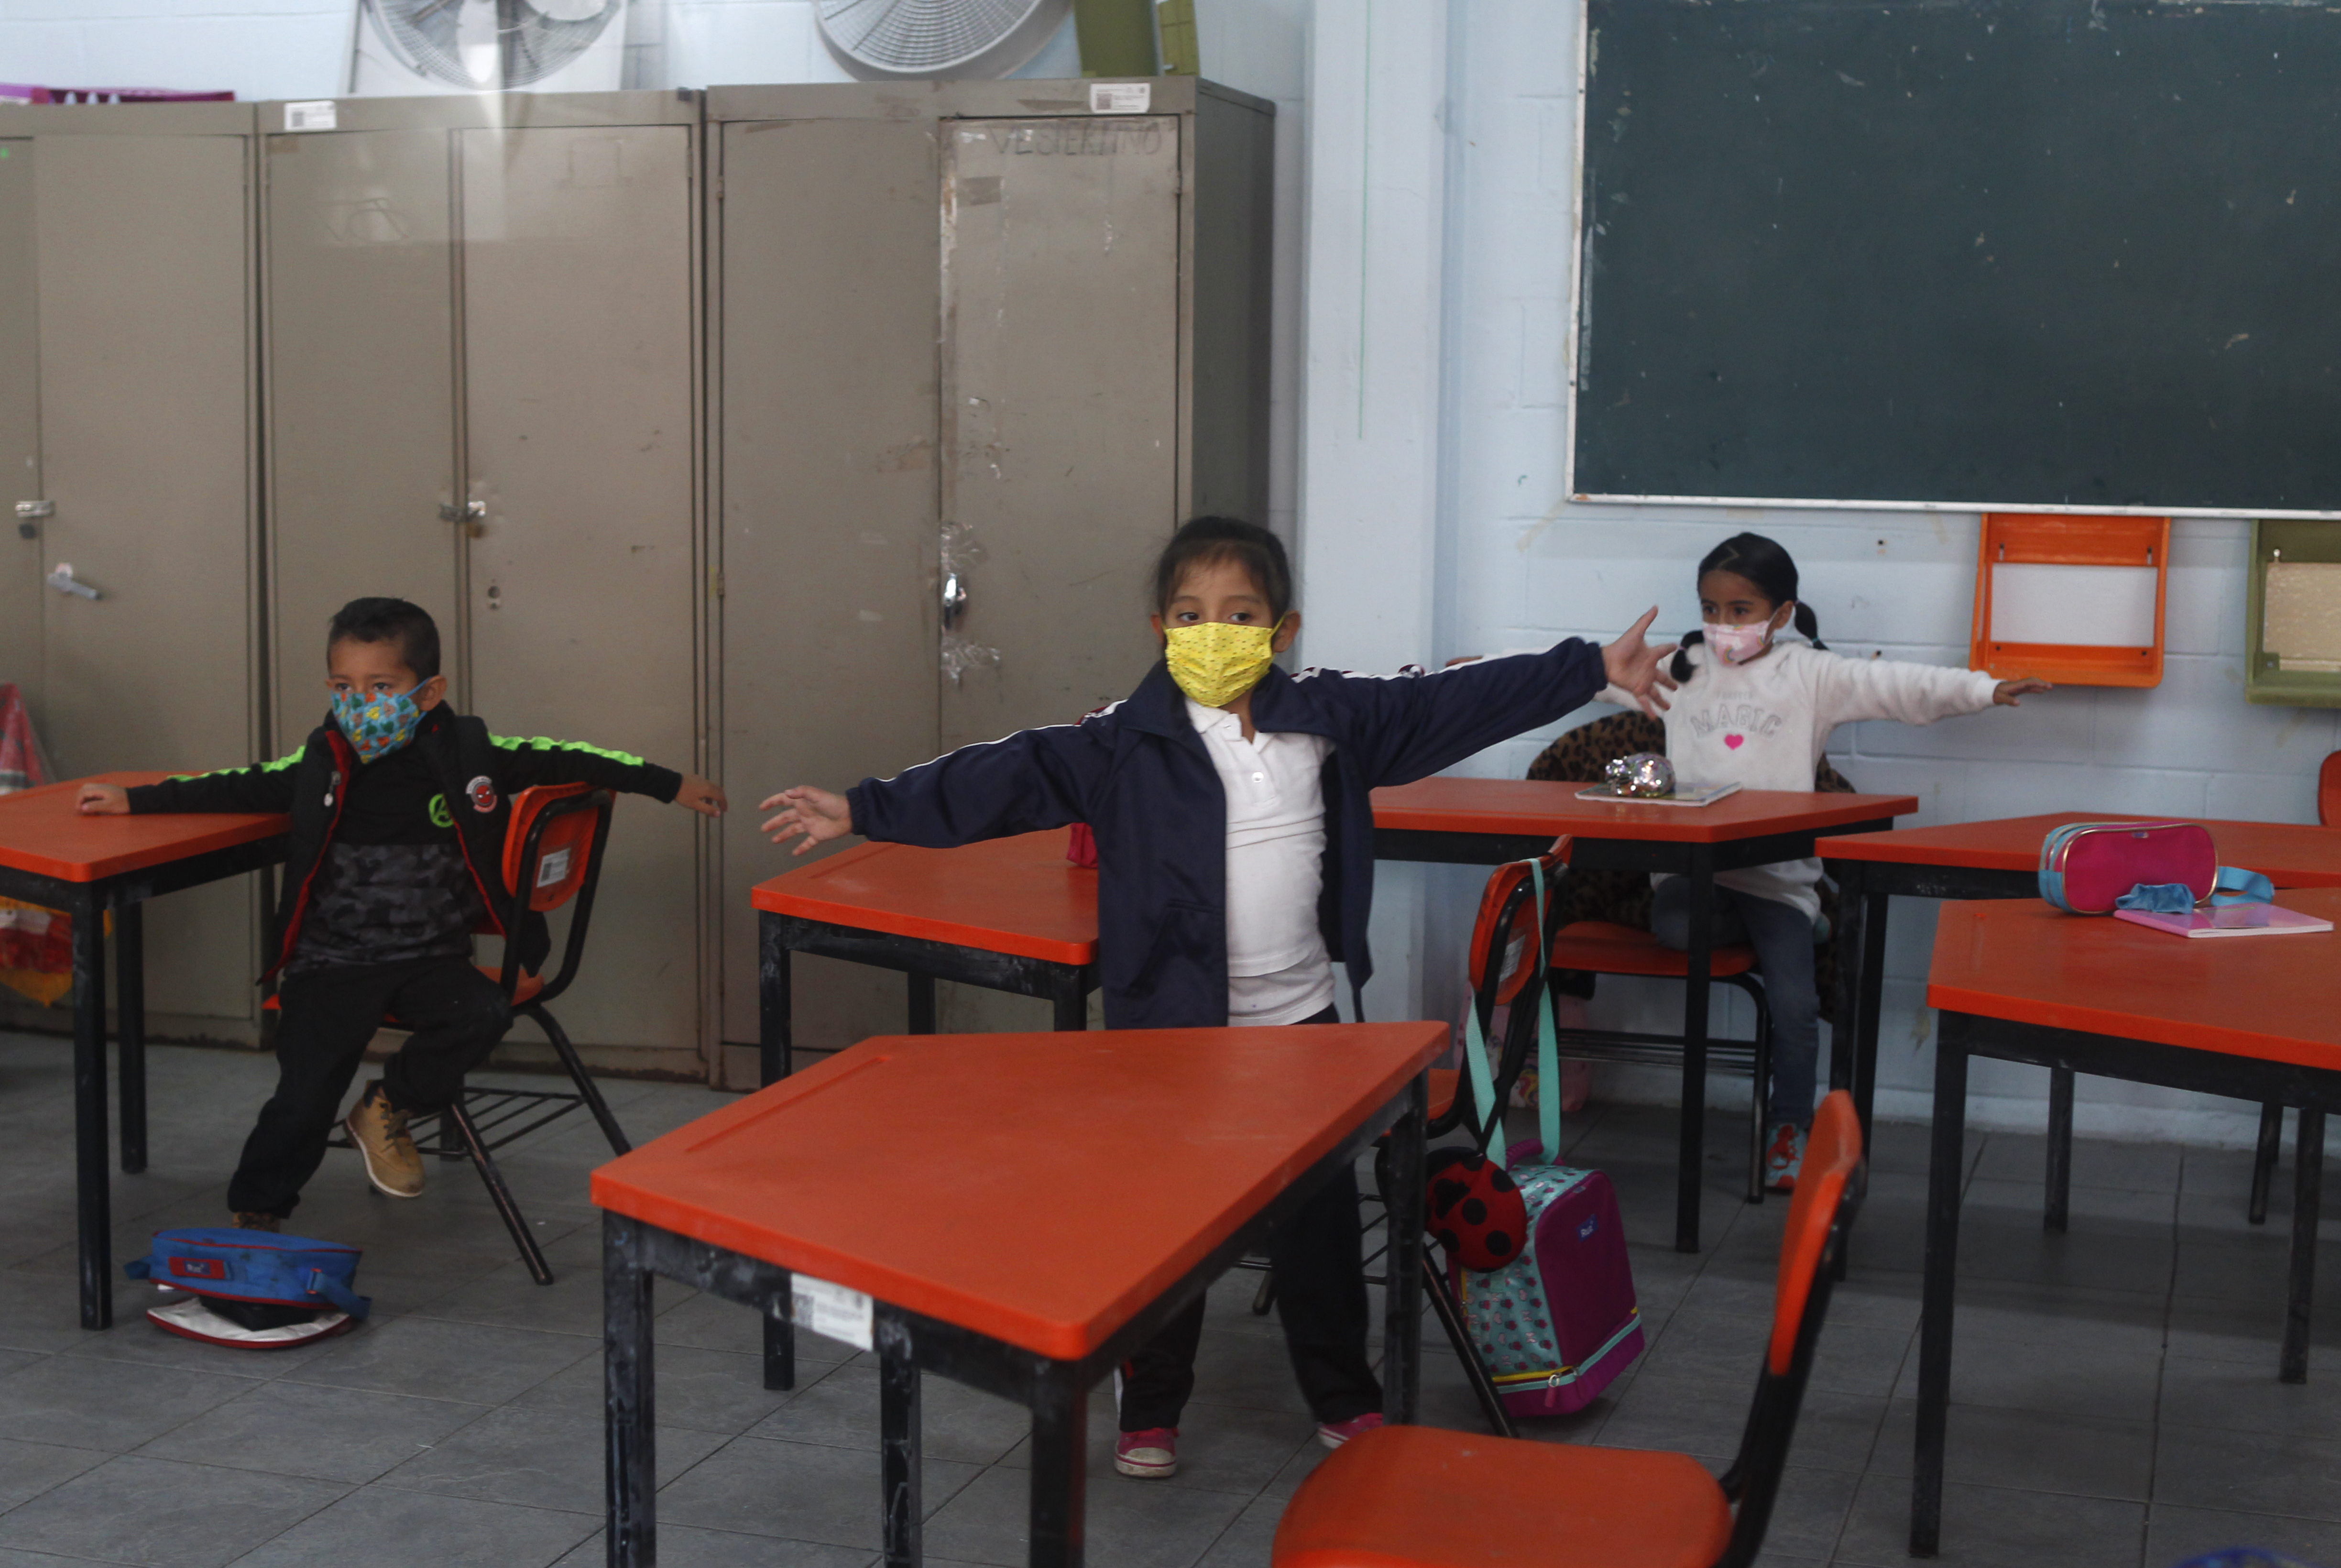 Alumnos realizan actividades en un salón clases. 
Foto: Karina Hernández / Infobae